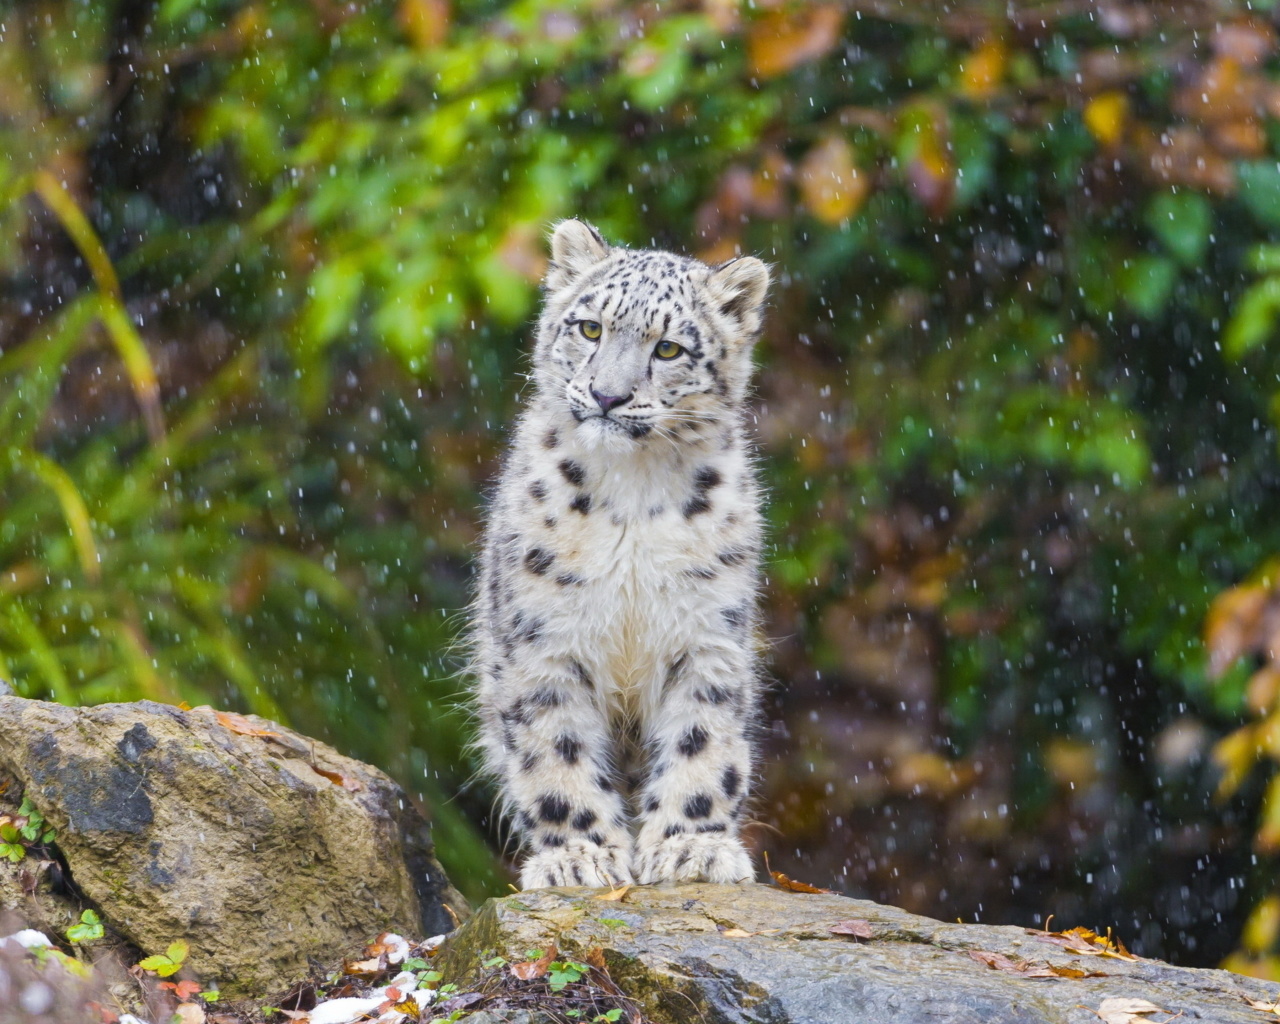 Snow Leopard in Zoo wallpaper 1280x1024